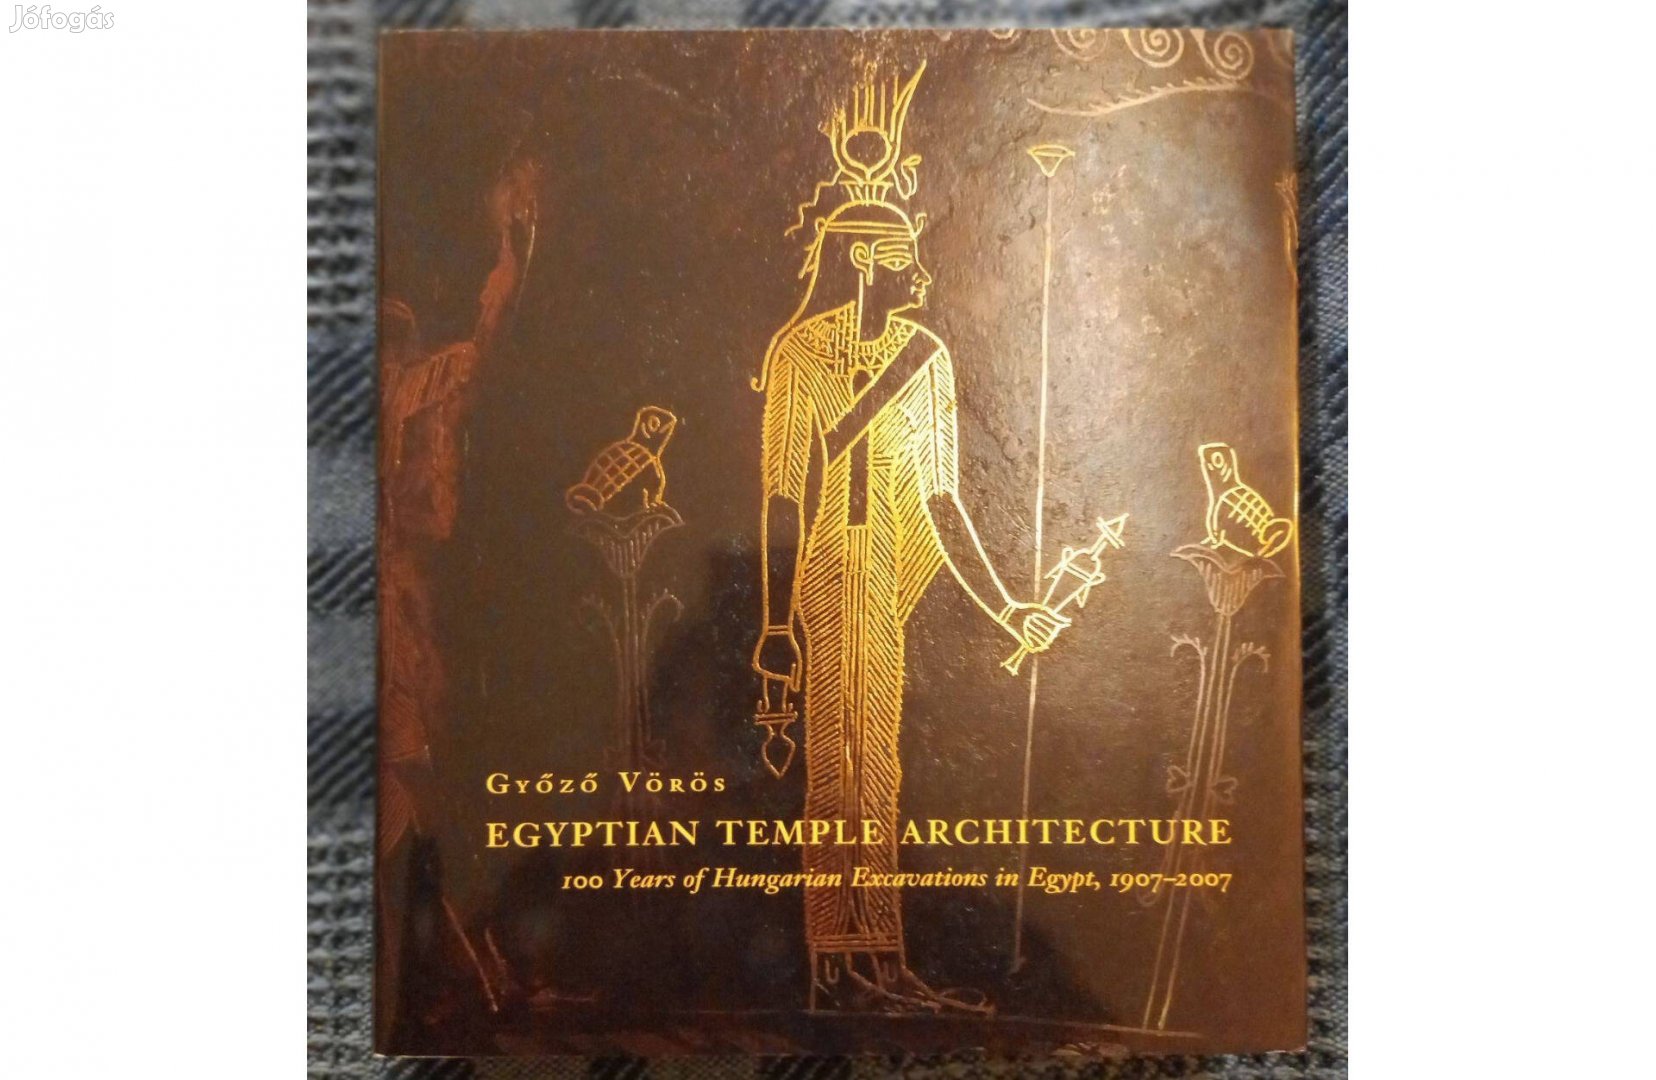 Vörös Győző: Egyptian Temple Architecture című dedikált példány eladó